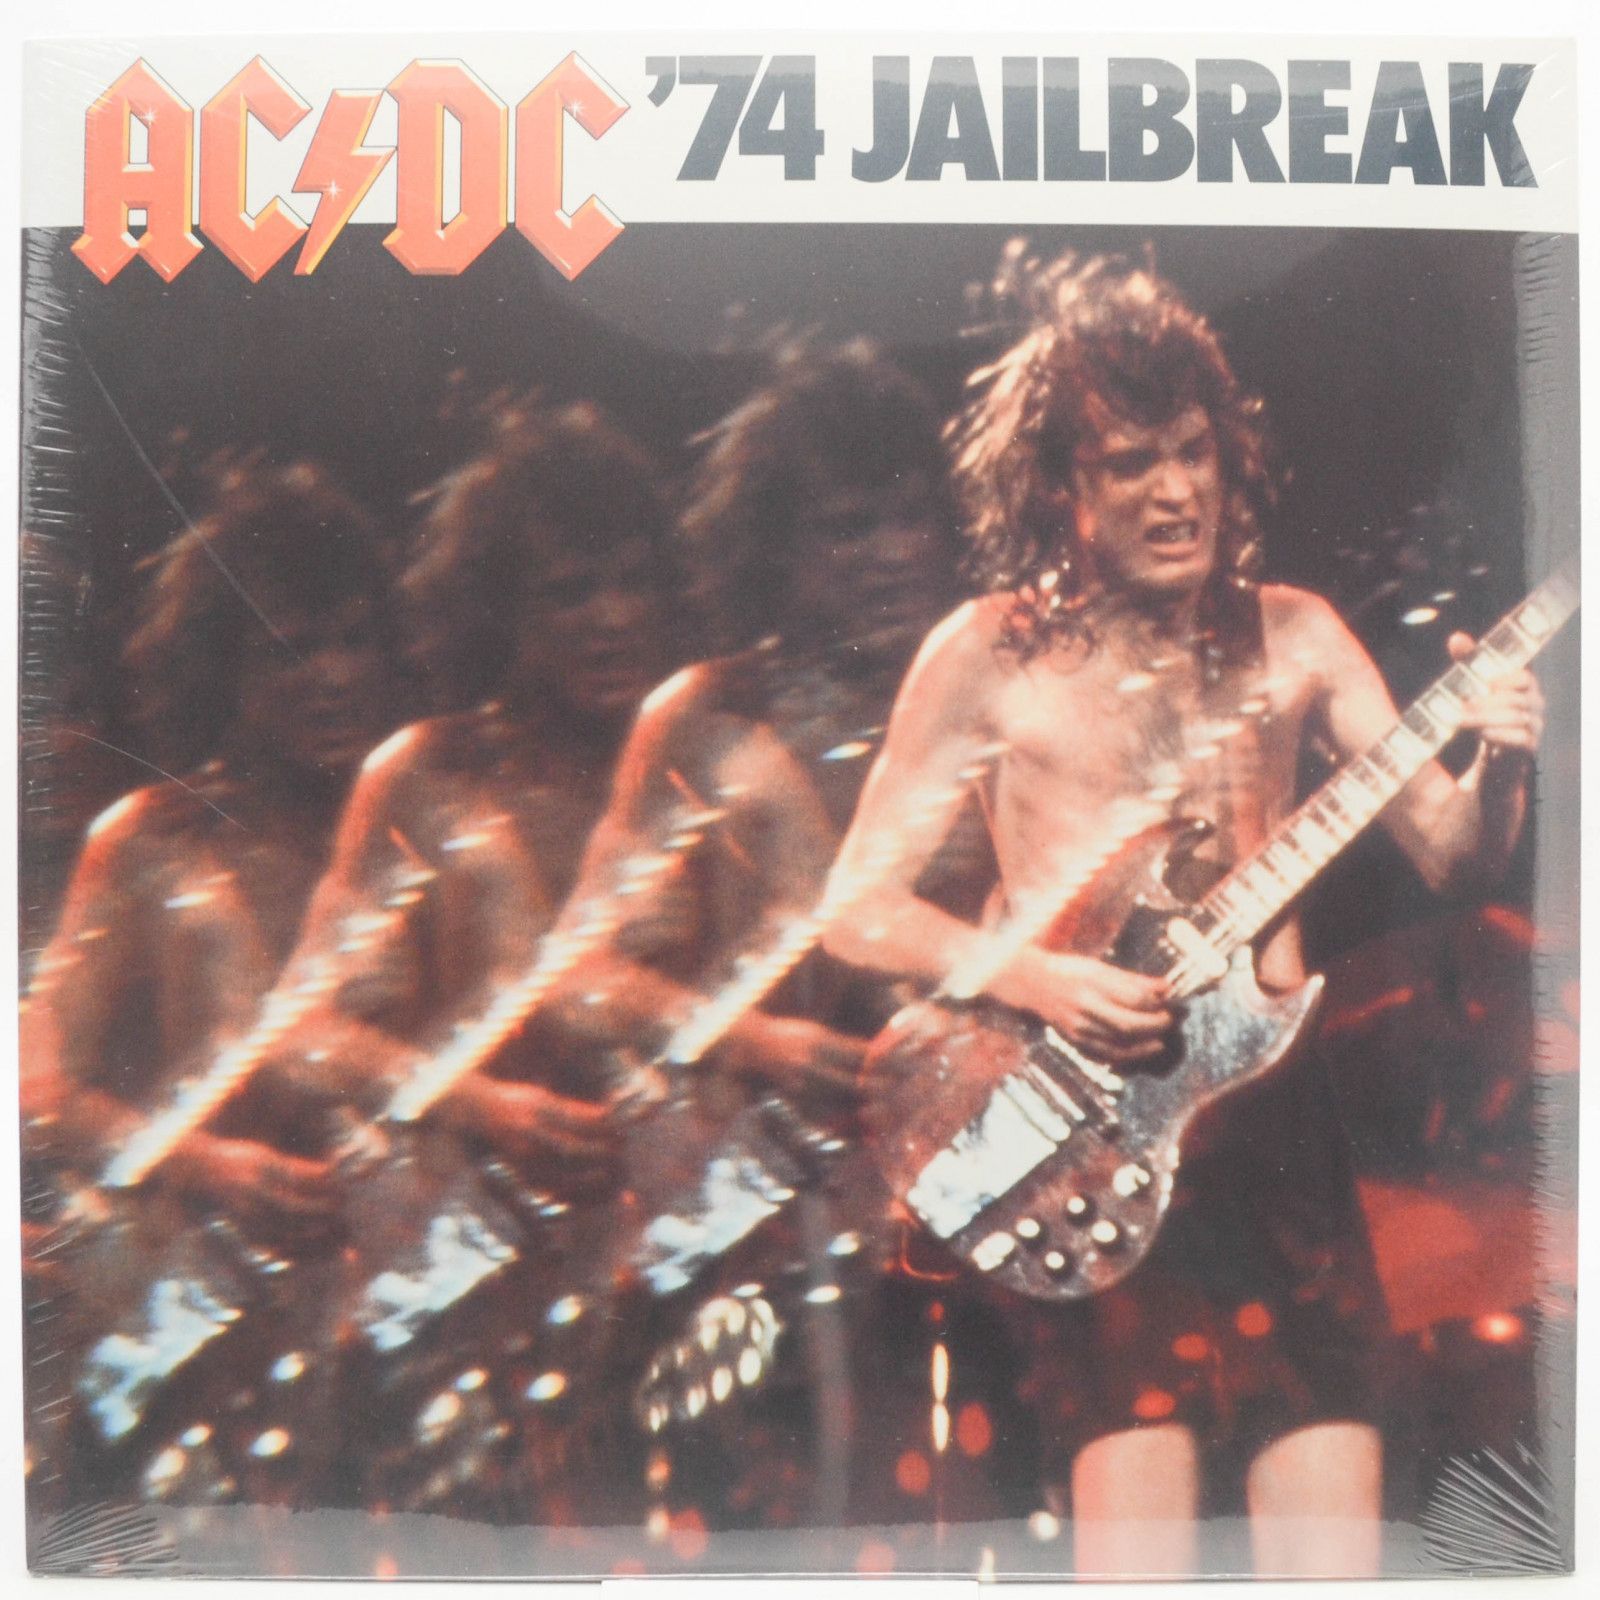 AC/DC — '74 Jailbreak, 1974